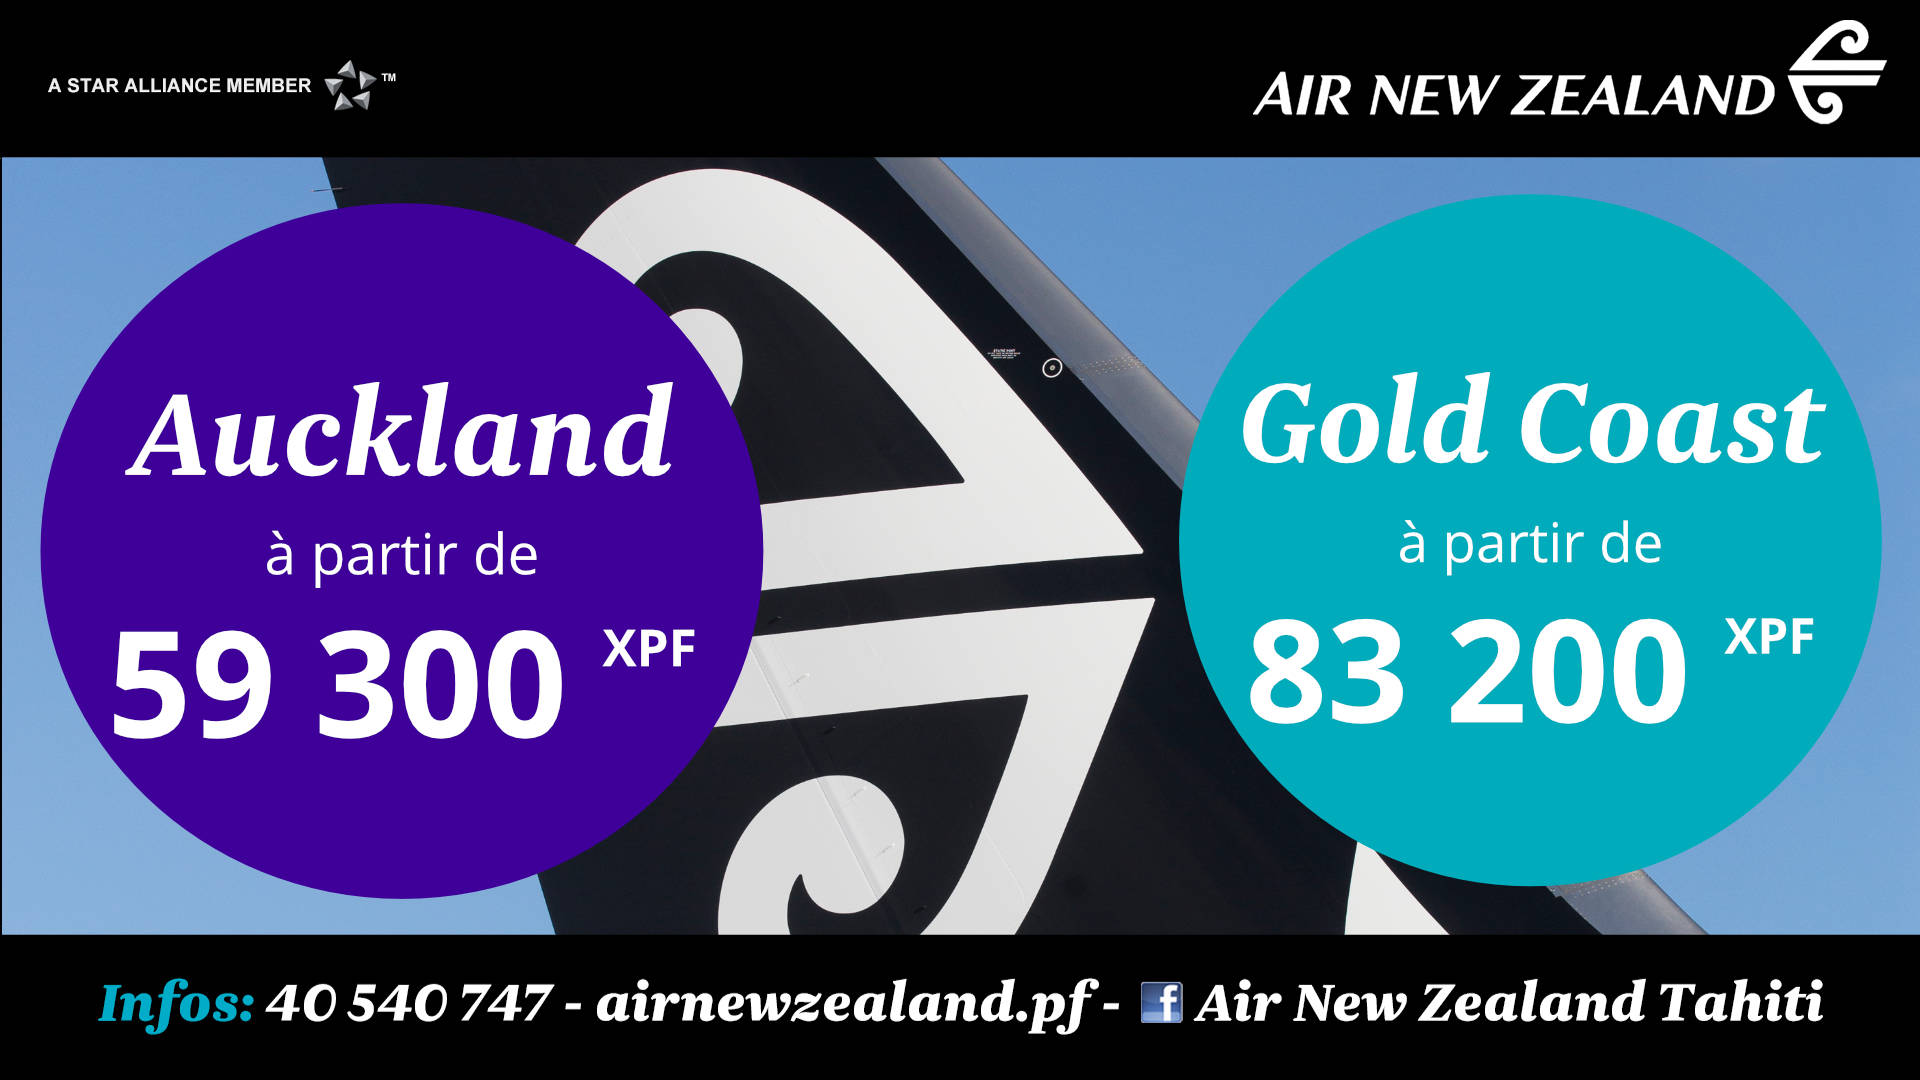 Visuel publicité Air New Zealand